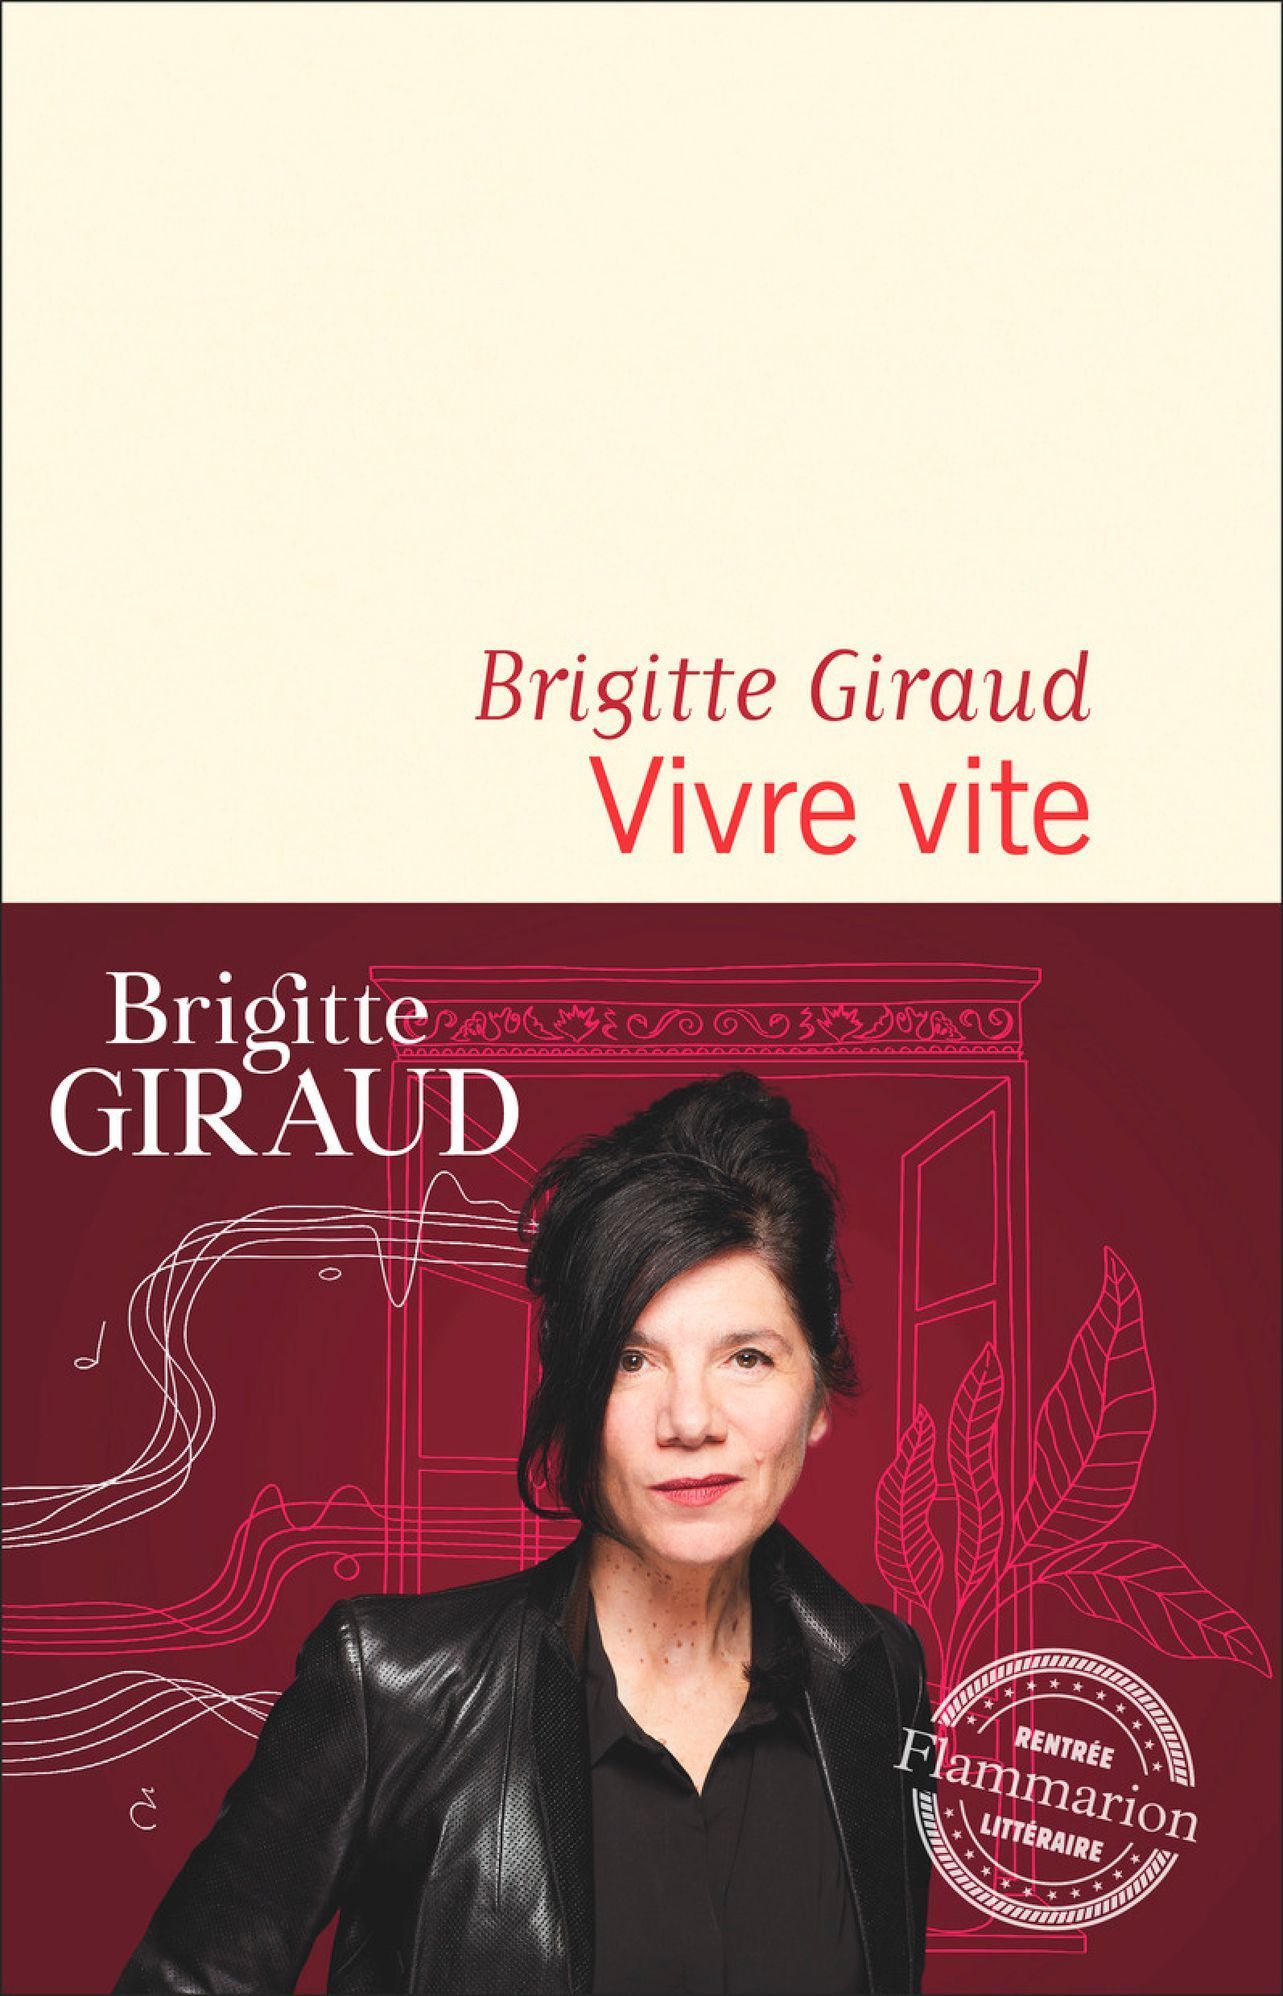 Brigitte Giraud: Vivre vite